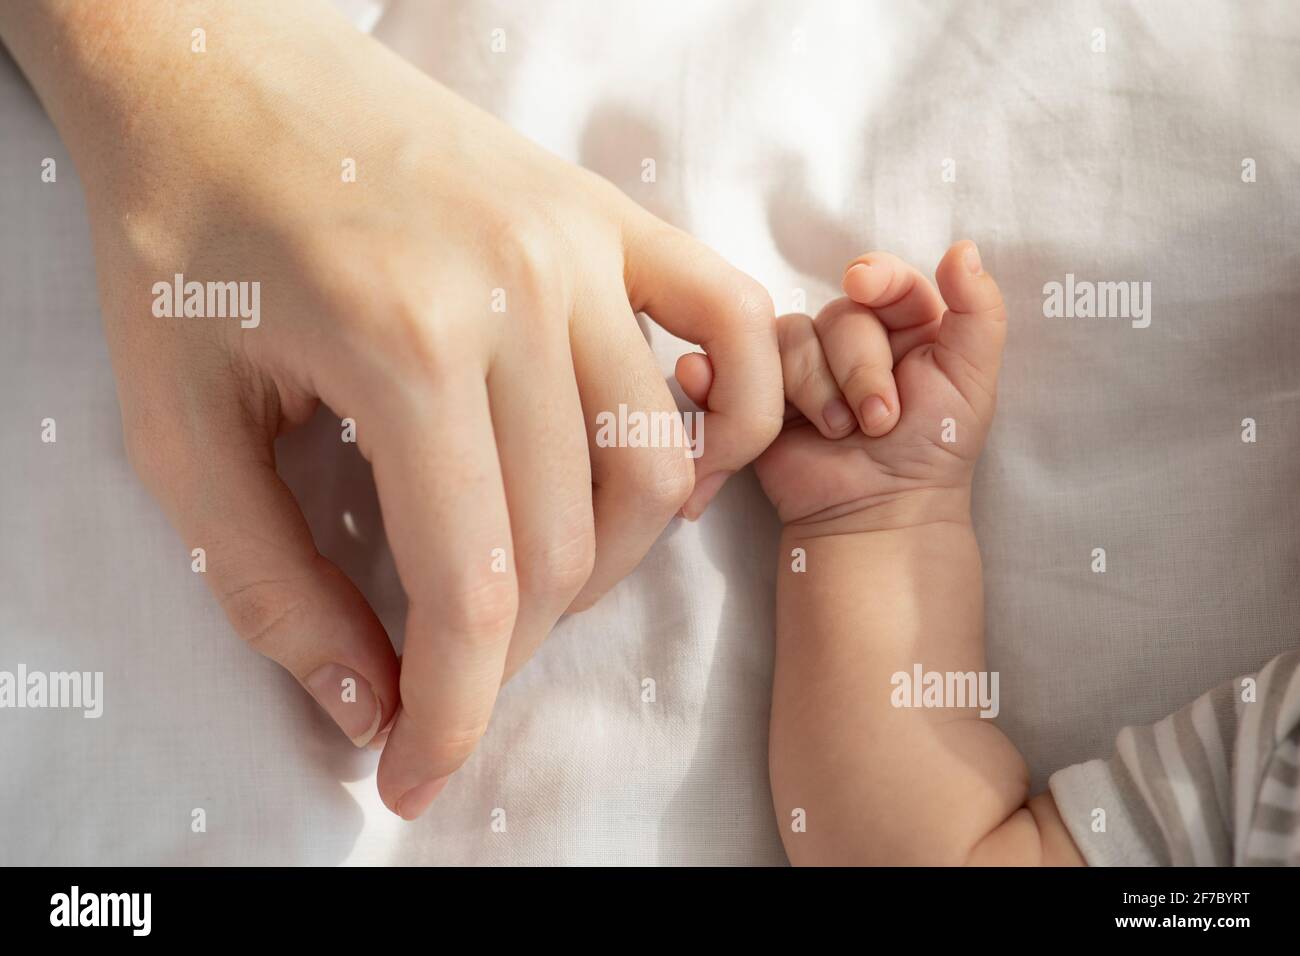 Connexion mère/bébé. Enfant nouveau-né tenant la main de la mère tout en étant allongé dans le lit Banque D'Images